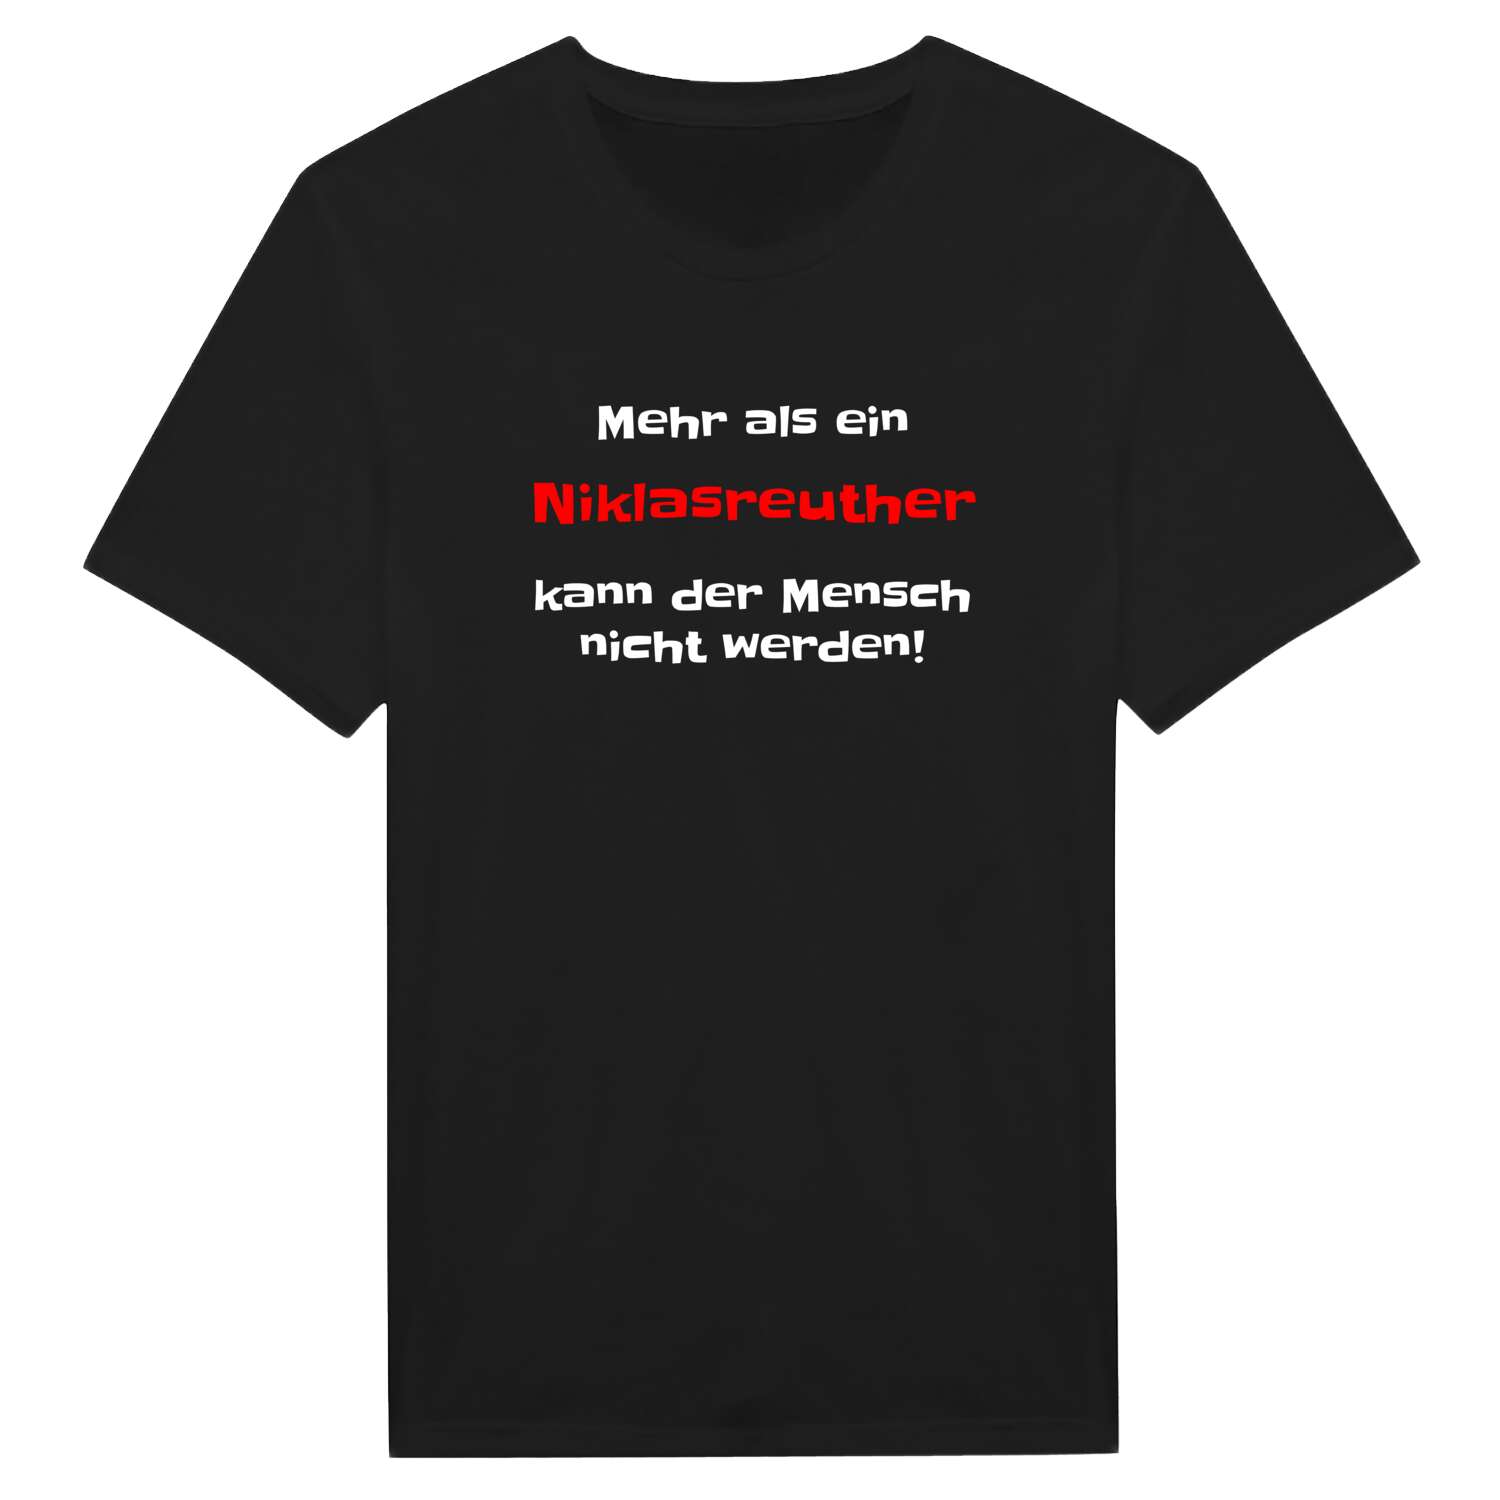 Niklasreuth T-Shirt »Mehr als ein«